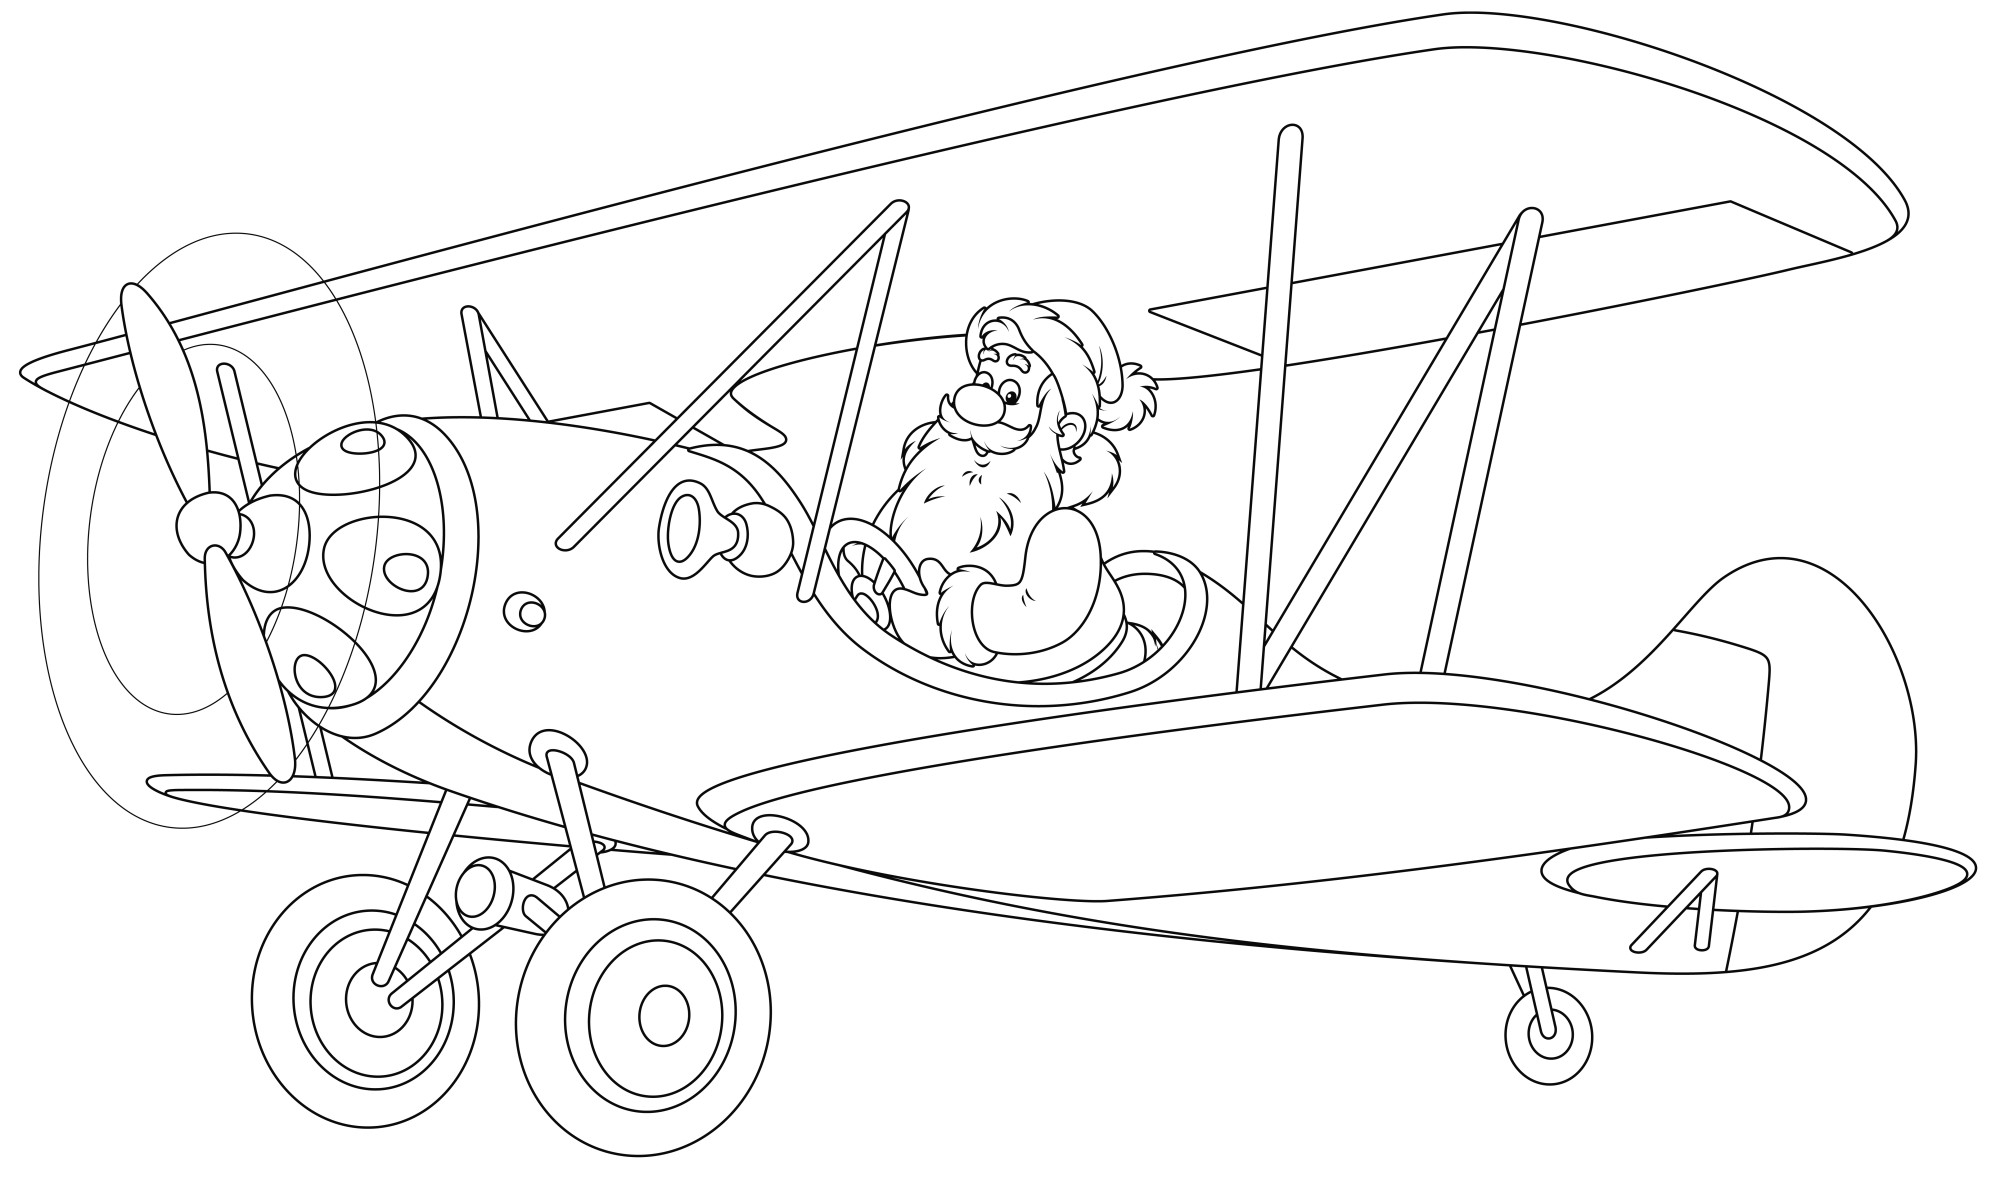 Раскраска для детей: самолет с пропеллером и дедушкой на борту